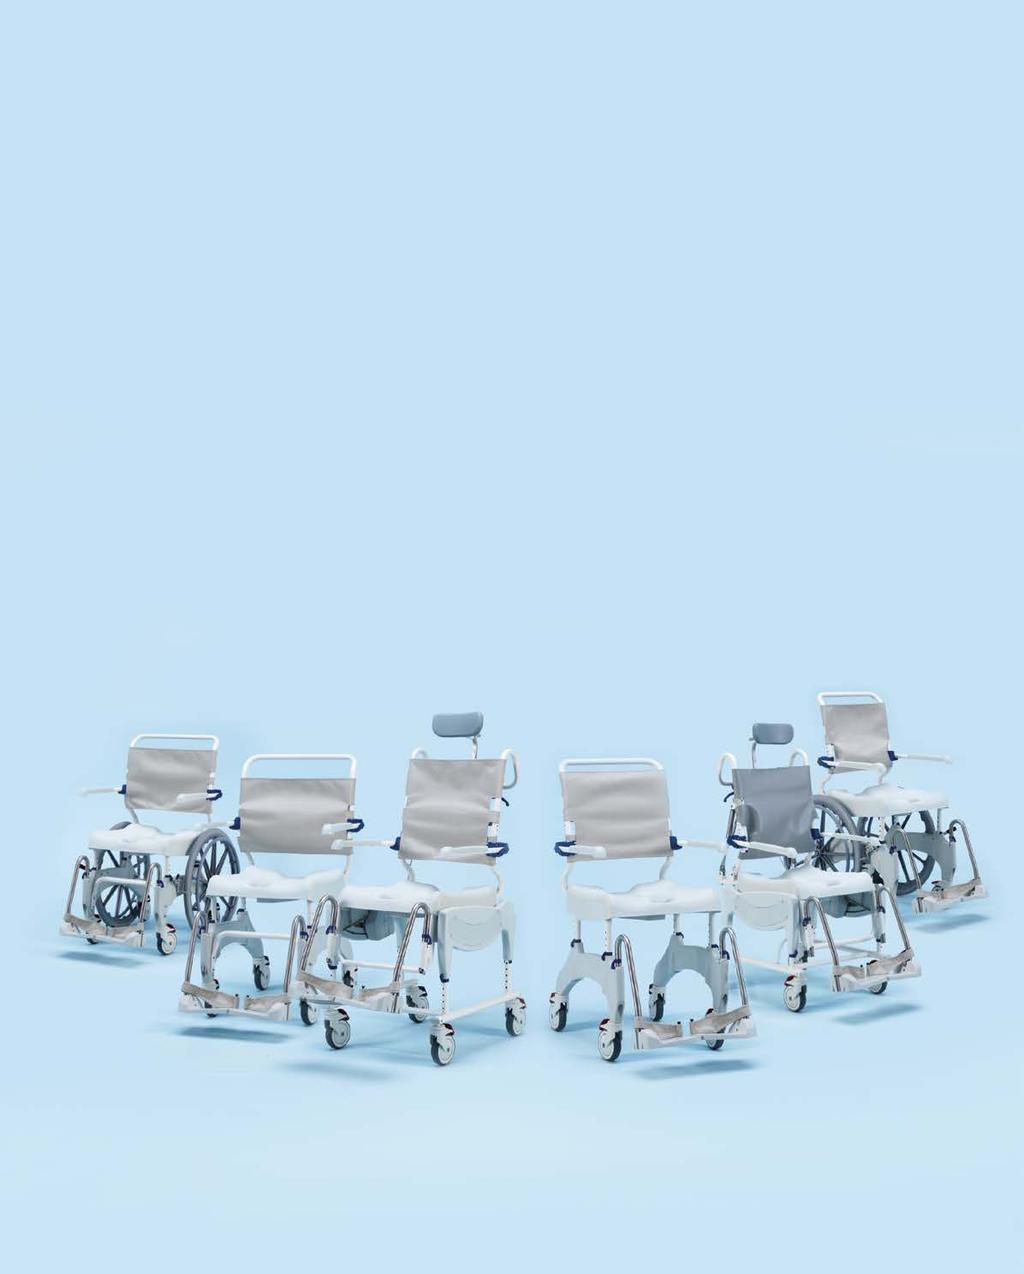 Suihku- ja wc-tuolien joustava valikoima tarjoaa henkilökohtaiseen hygieniaan liittyviä ratkaisuja monenlaisiin fyysisiin olosuhteisiin, aina suoraselkäisestä perussuihkutuolista malleihin, joissa on